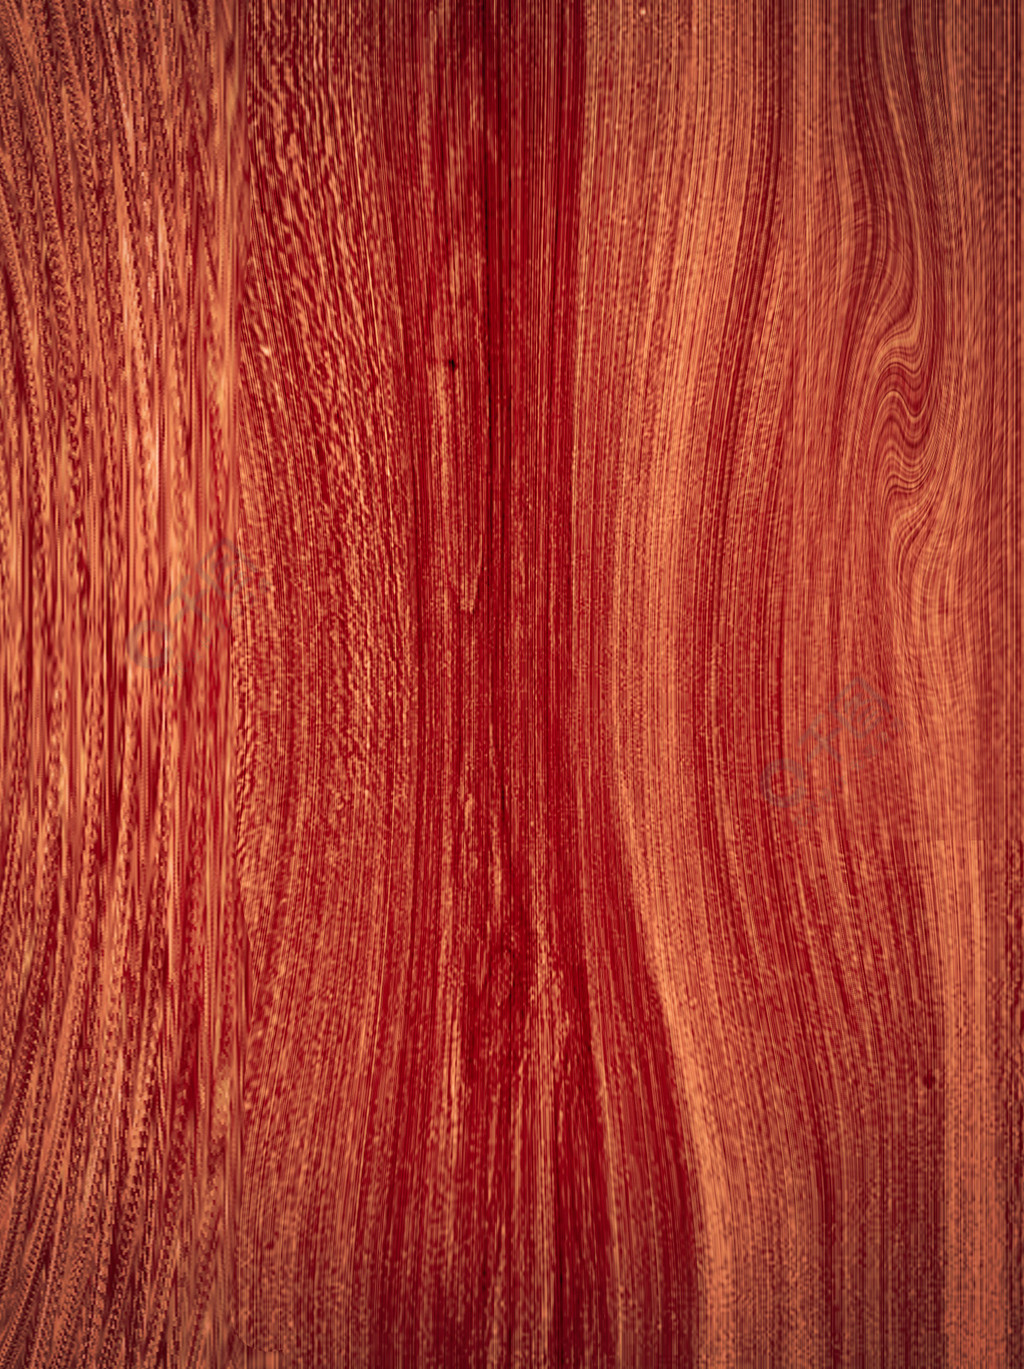 创意PS纹理红木桃木木纹贴图背景素材